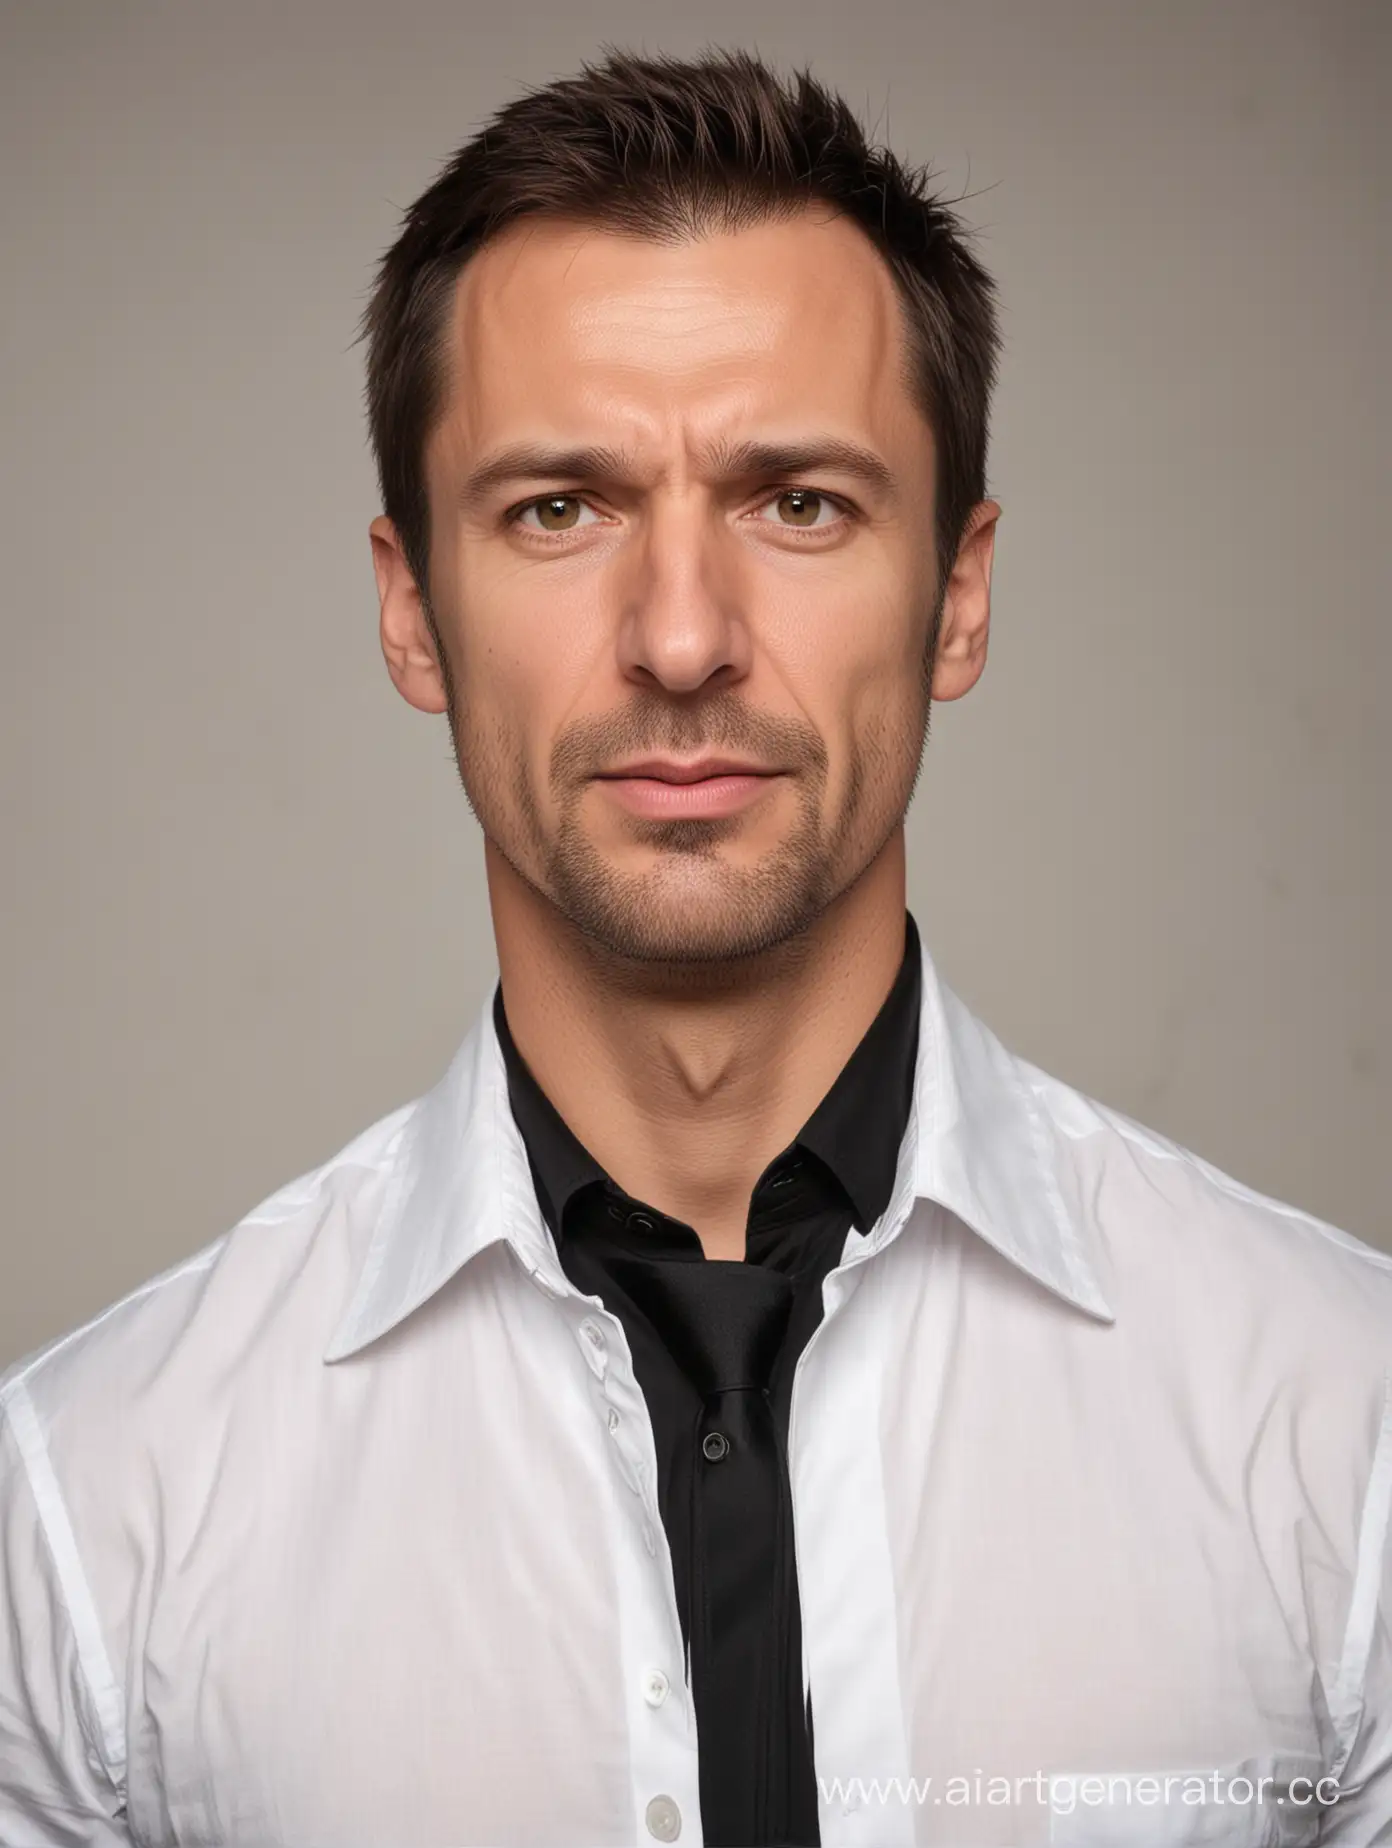 Русский мужчина-45 лет. В белой рубашке и чёрном пиджаке (без галстука) у него серьёзное выражение лица